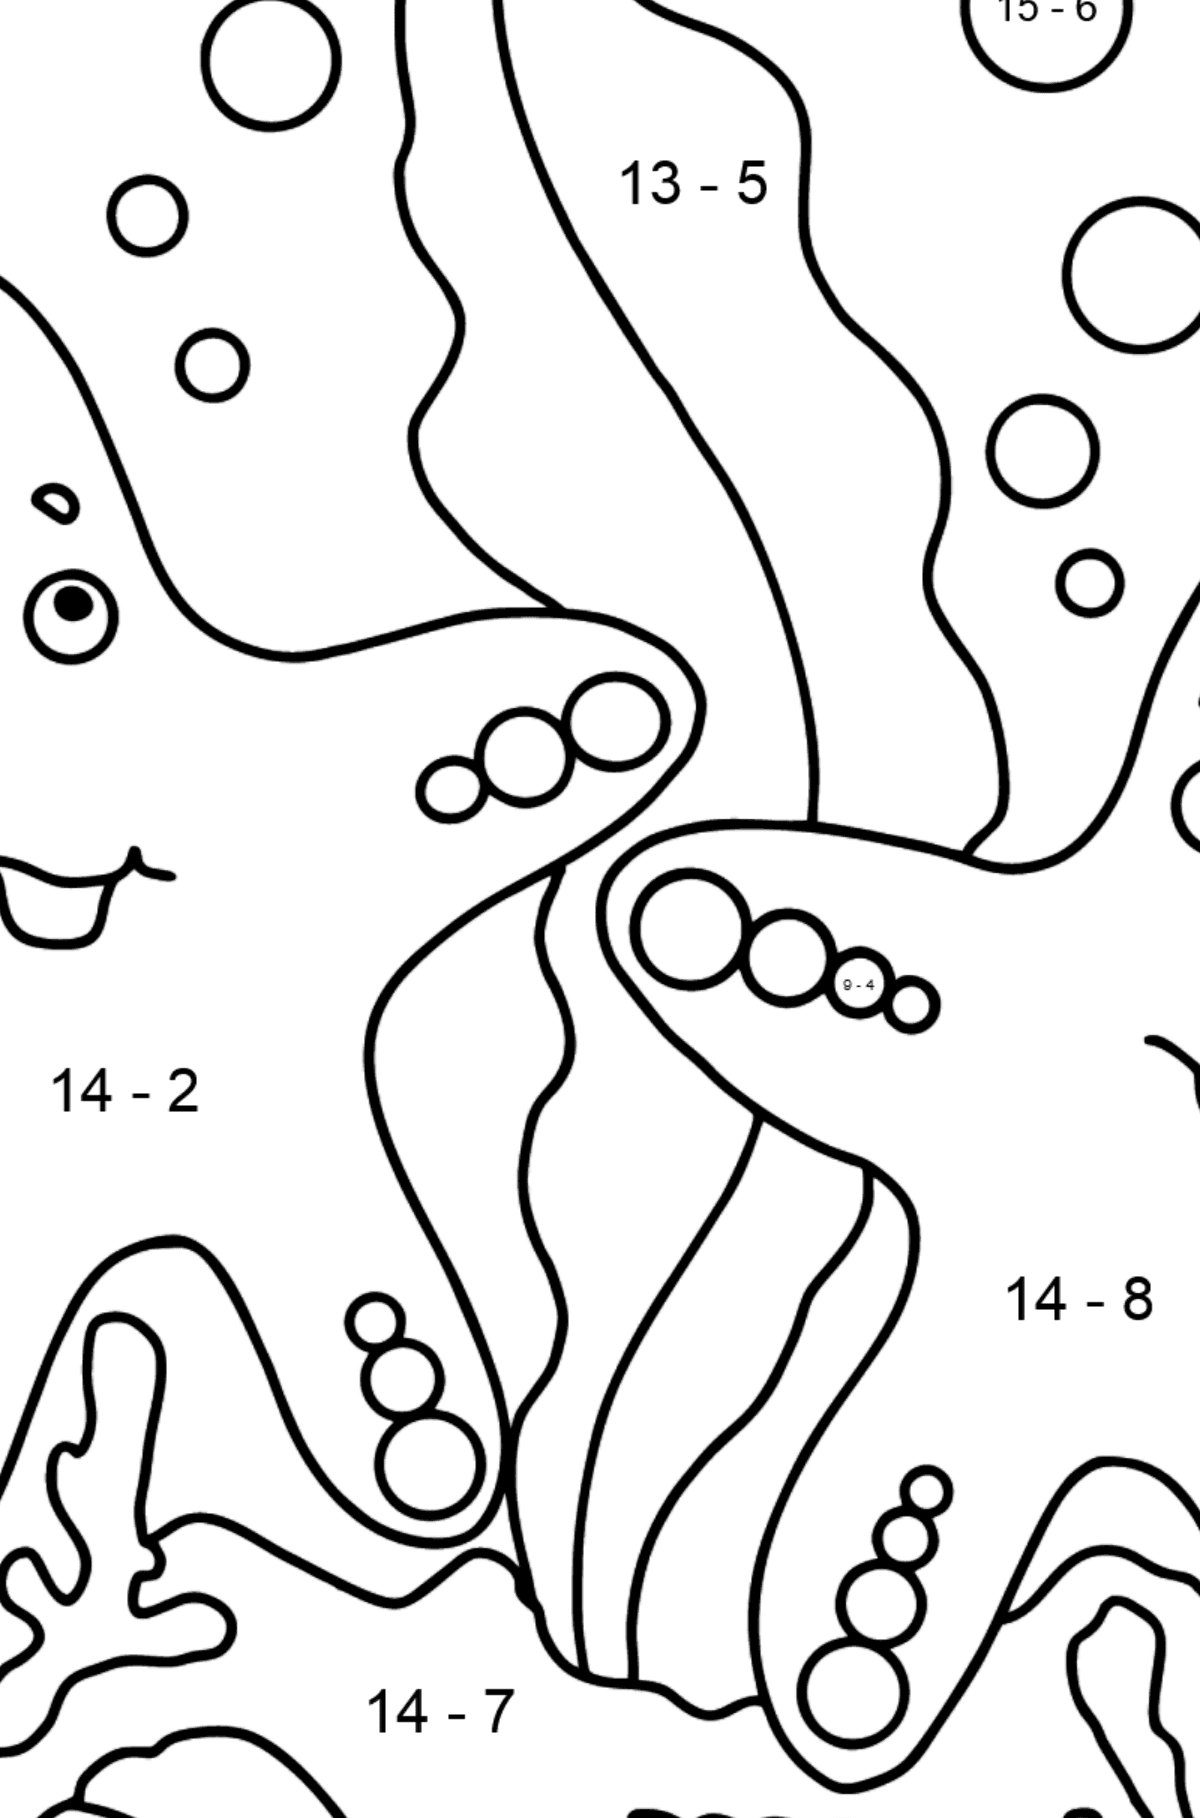 Zwei Seesterne Ausmalbild (Einfach) - Mathe Ausmalbilder - Subtraktion für Kinder